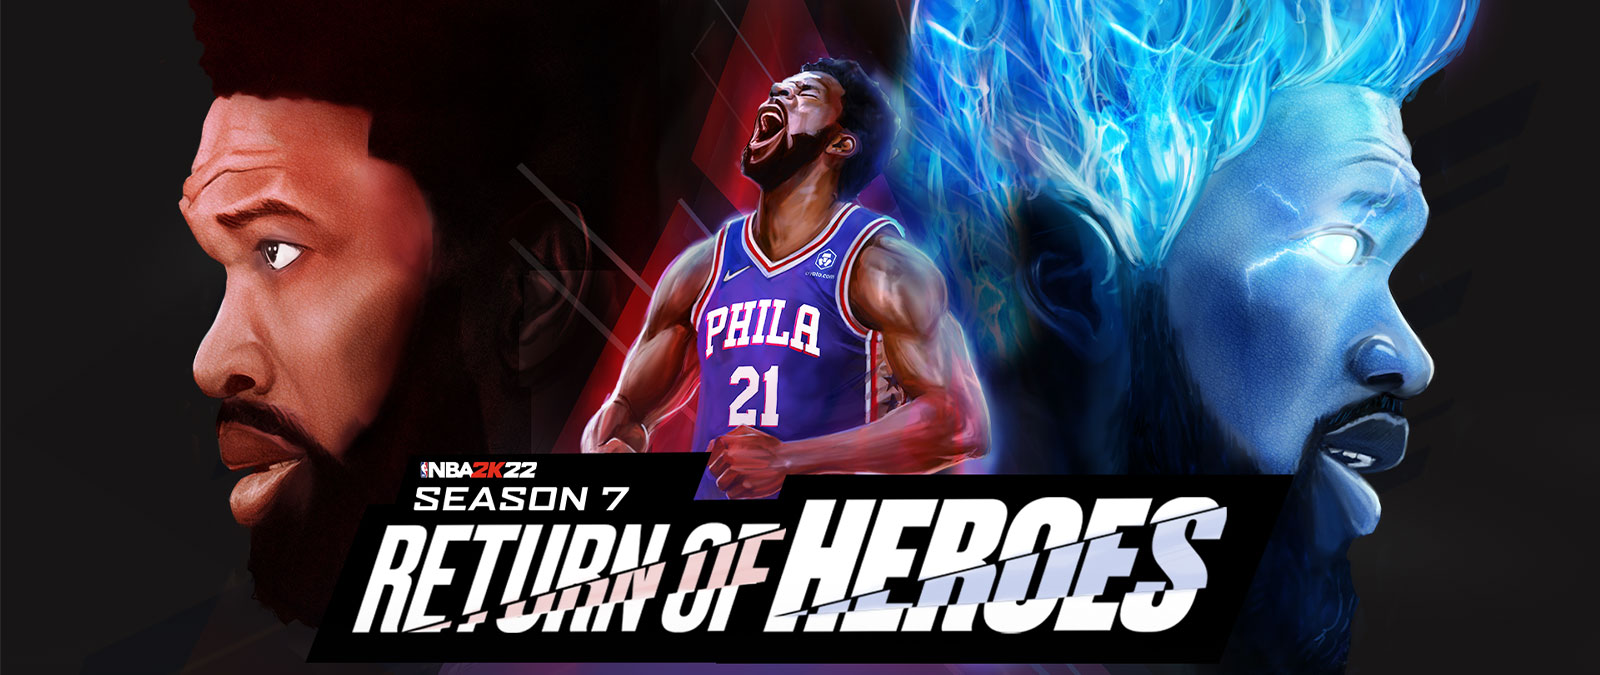 NBA 2K22, Season 7, Return of Heros, ein Philadelphia-Spieler schreit in den Himmel und wird von blauen Flammen erfüllt.